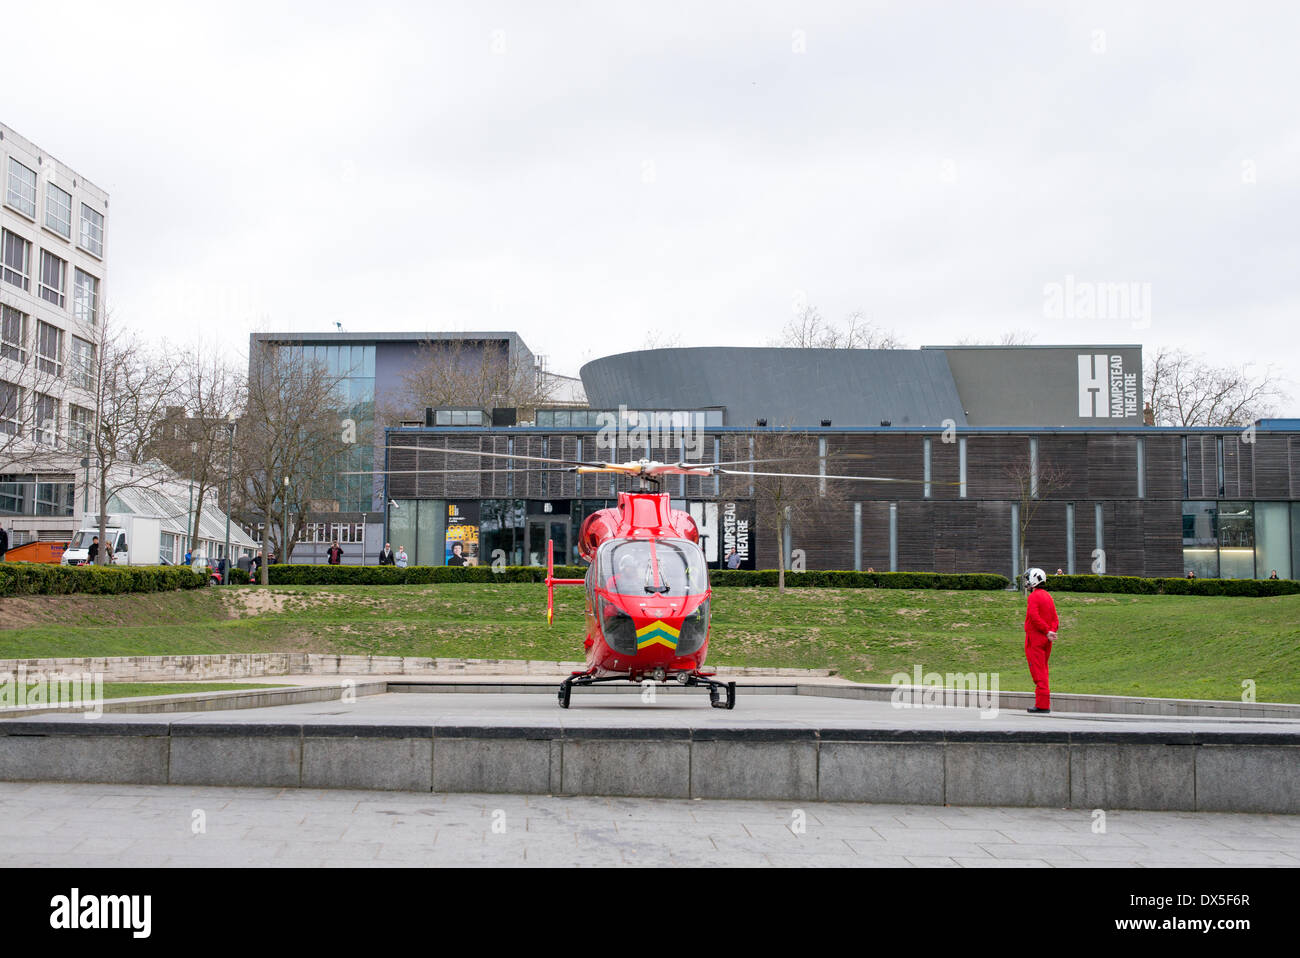 Londres, Royaume-Uni, 18 mars 2014. Membre de l'équipage des aéronefs contrôle avant le décollage après avoir répondu à un appel d'urgence à Swiss Cottage Leisure Centre Credit : Lapin fantastique/Alamy Live News Banque D'Images